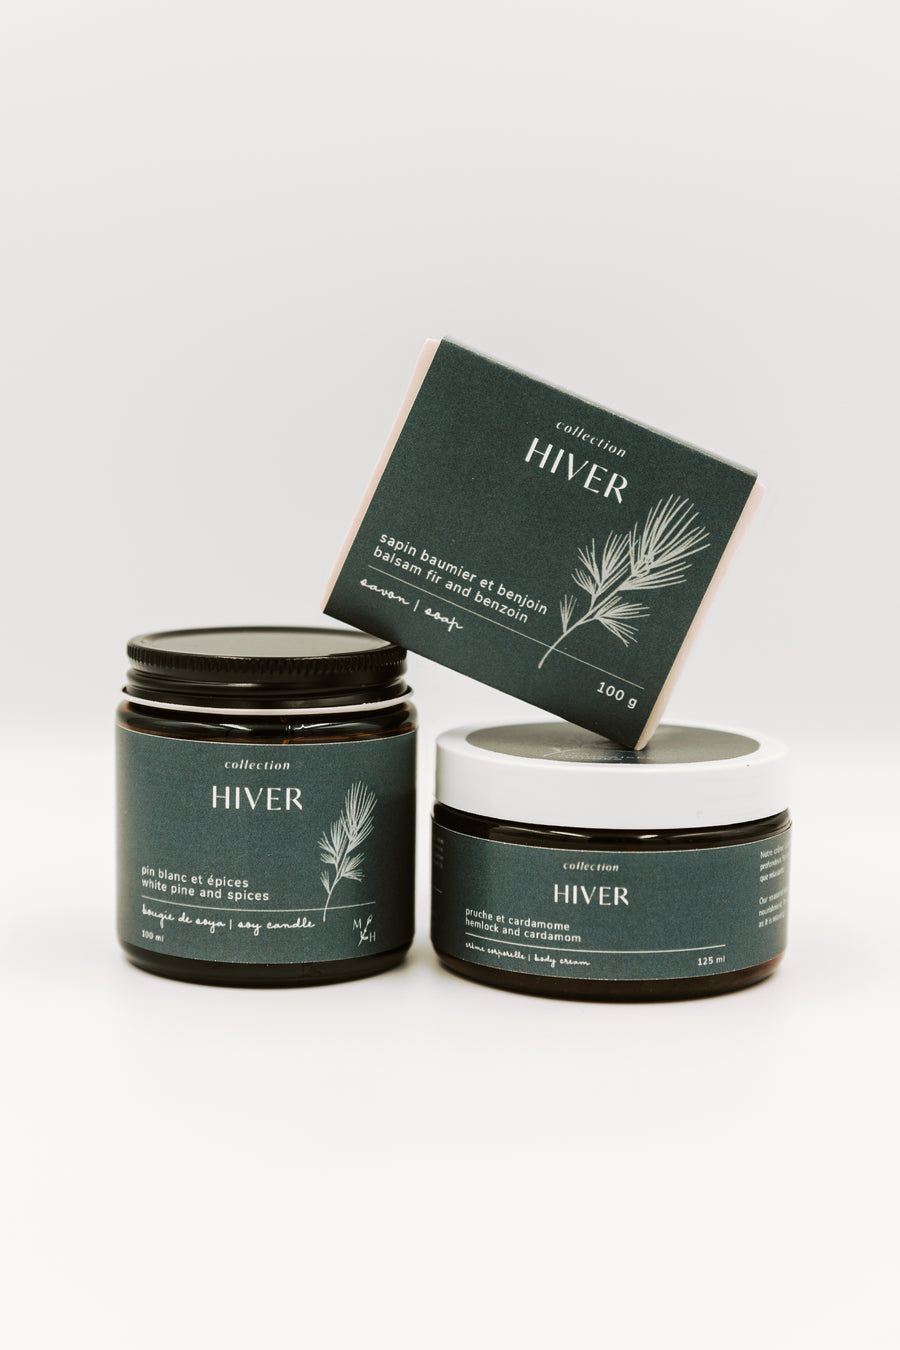 Collection Hiver - le trio - Les Mauvaises Herbes